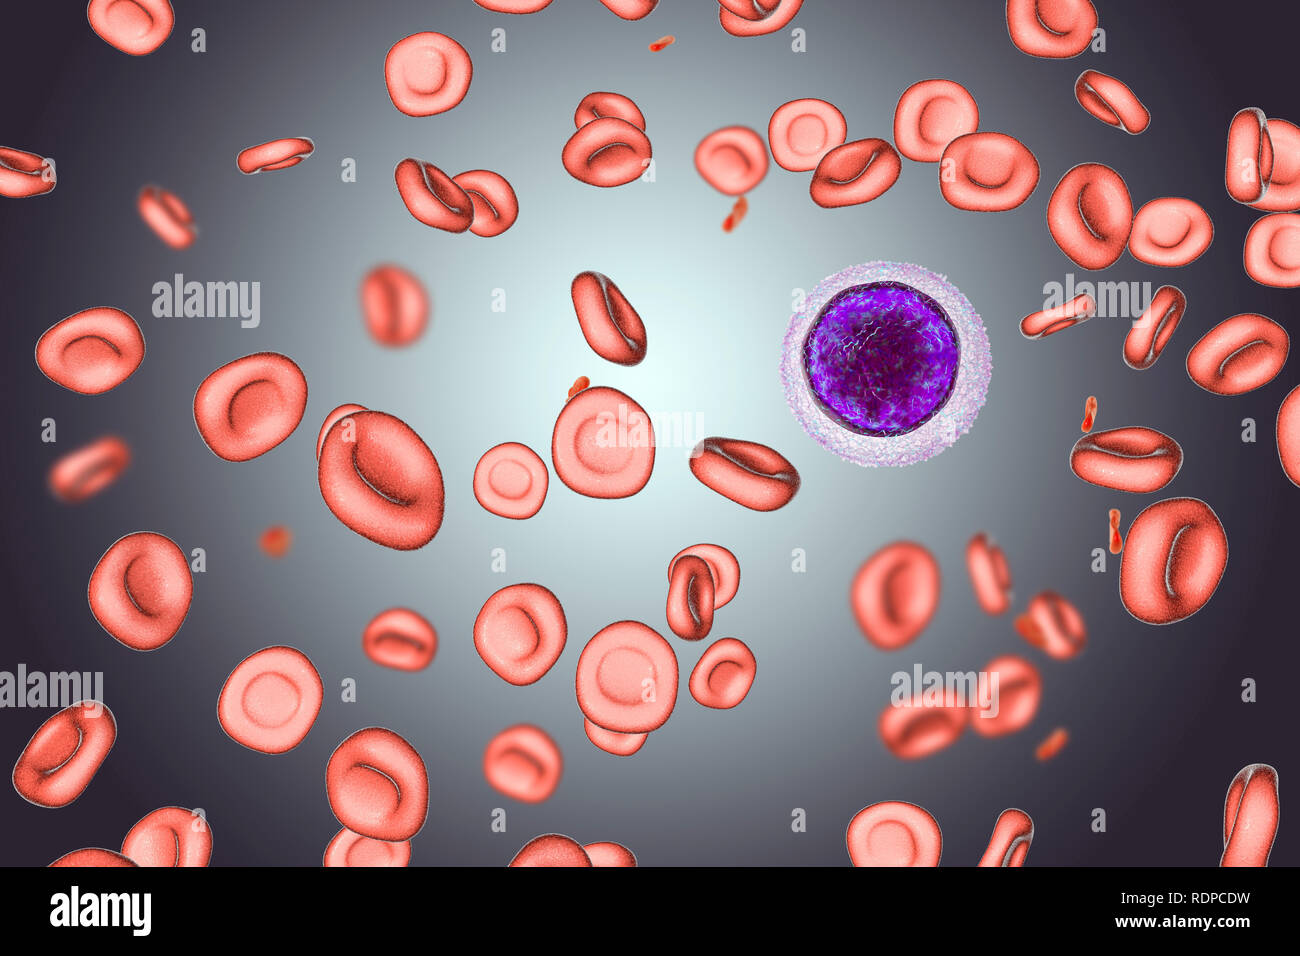 Anemia da deficienza di ferro. Computer illustrazione che mostra  hypochromic (stain scarsamente) e microcytic (piccole) le cellule rosse del  sangue. Un linfocita di piccole dimensioni è disegnata per il confronto  delle dimensioni.